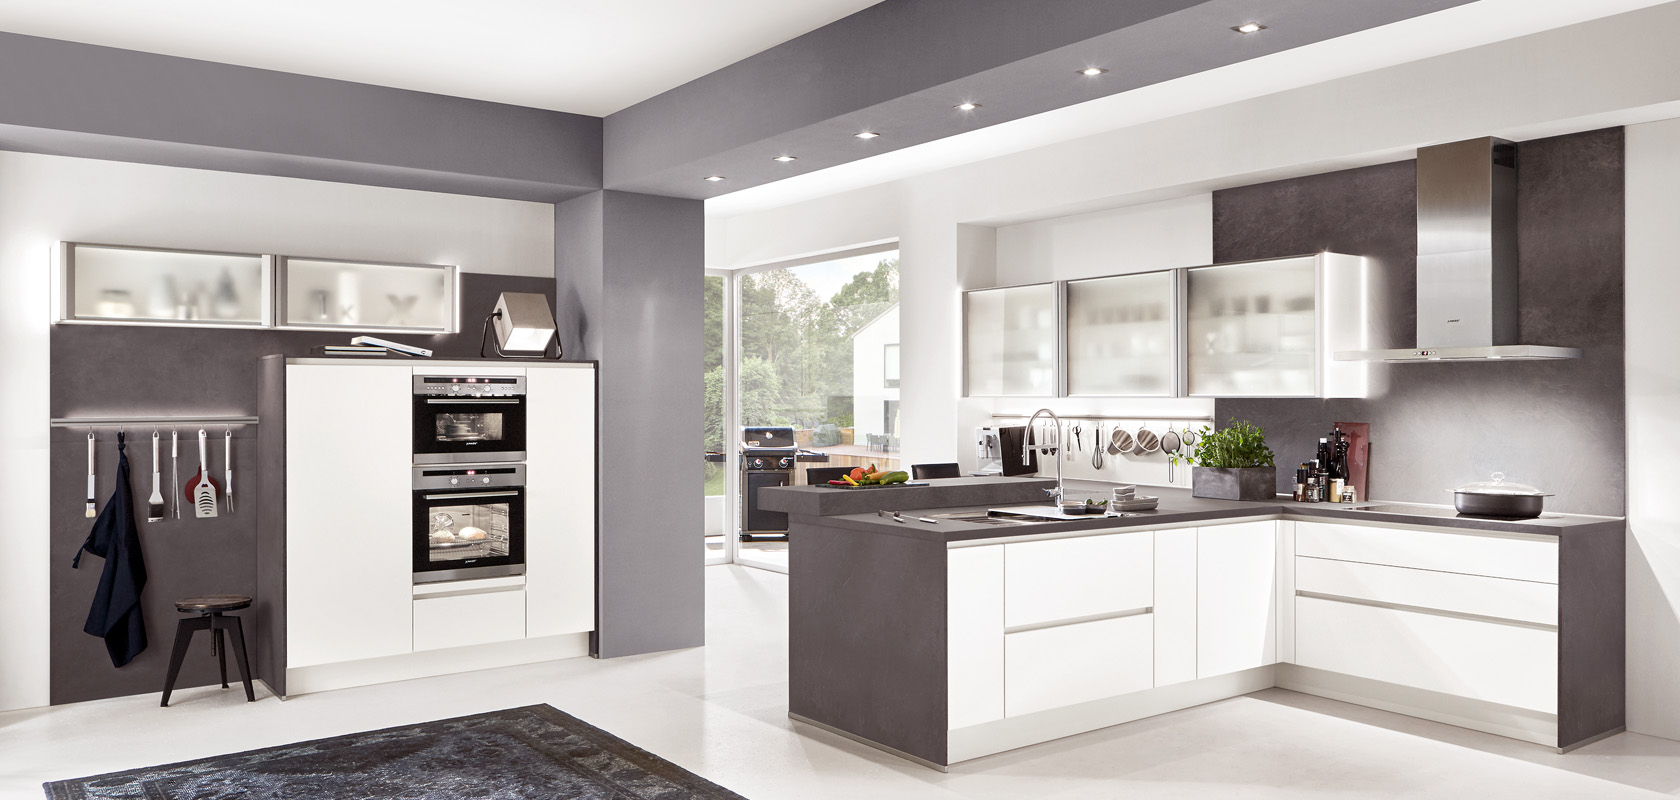 Moderne keuken met hoogglans kasten, roestvrijstalen apparaten en een strak ontwerp met een combinatie van witte en grijze tinten, wat zorgt voor een eigentijdse uitstraling.